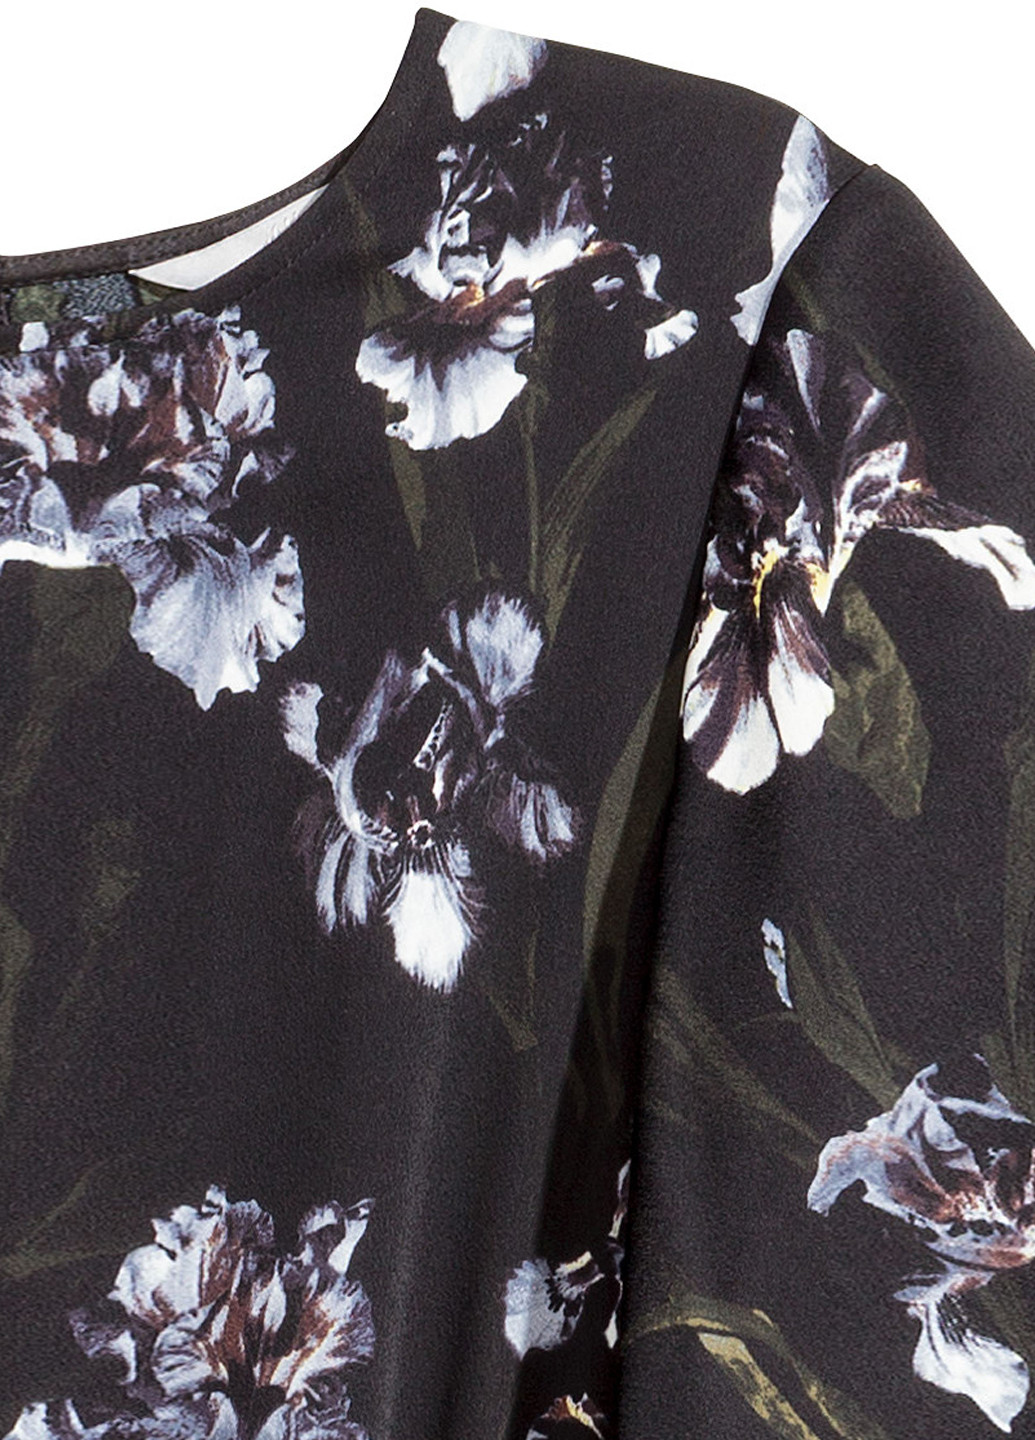 Комбинезон H&M комбинезон-брюки цветочный чёрный кэжуал атлас, полиэстер